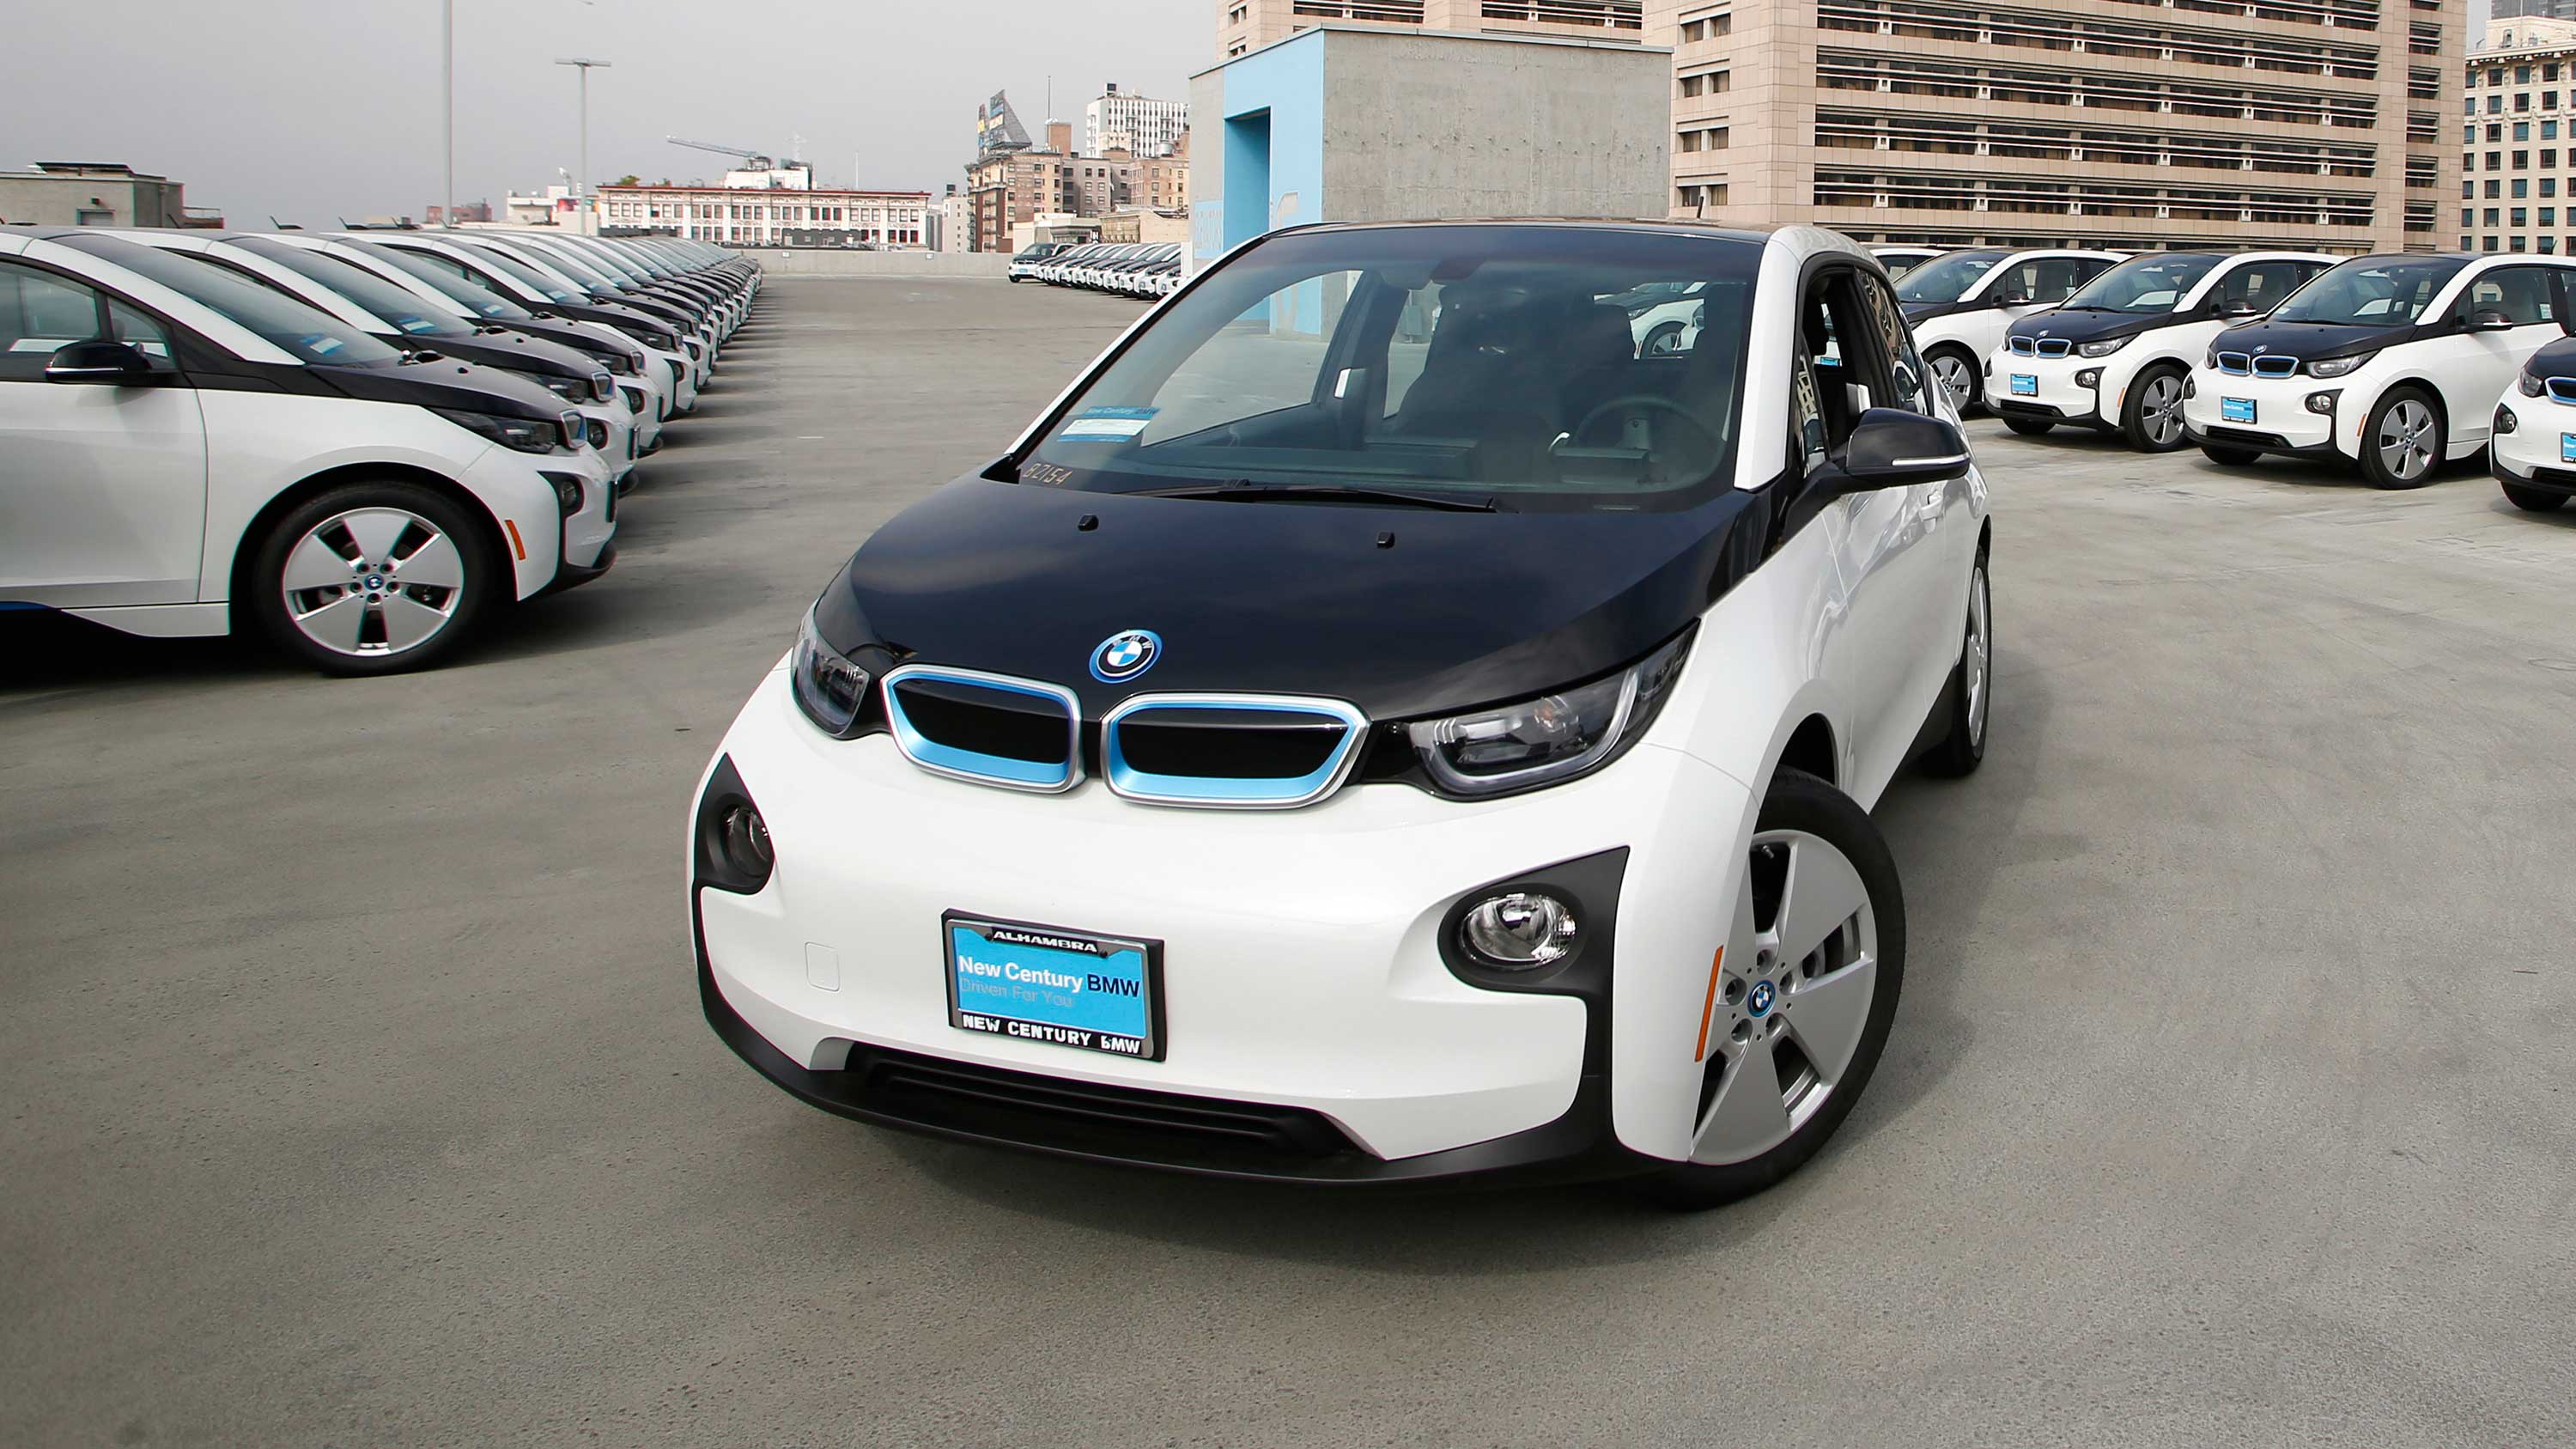 BMW electrifies LAPD fleet with 100 i3 EVs | TechRadar